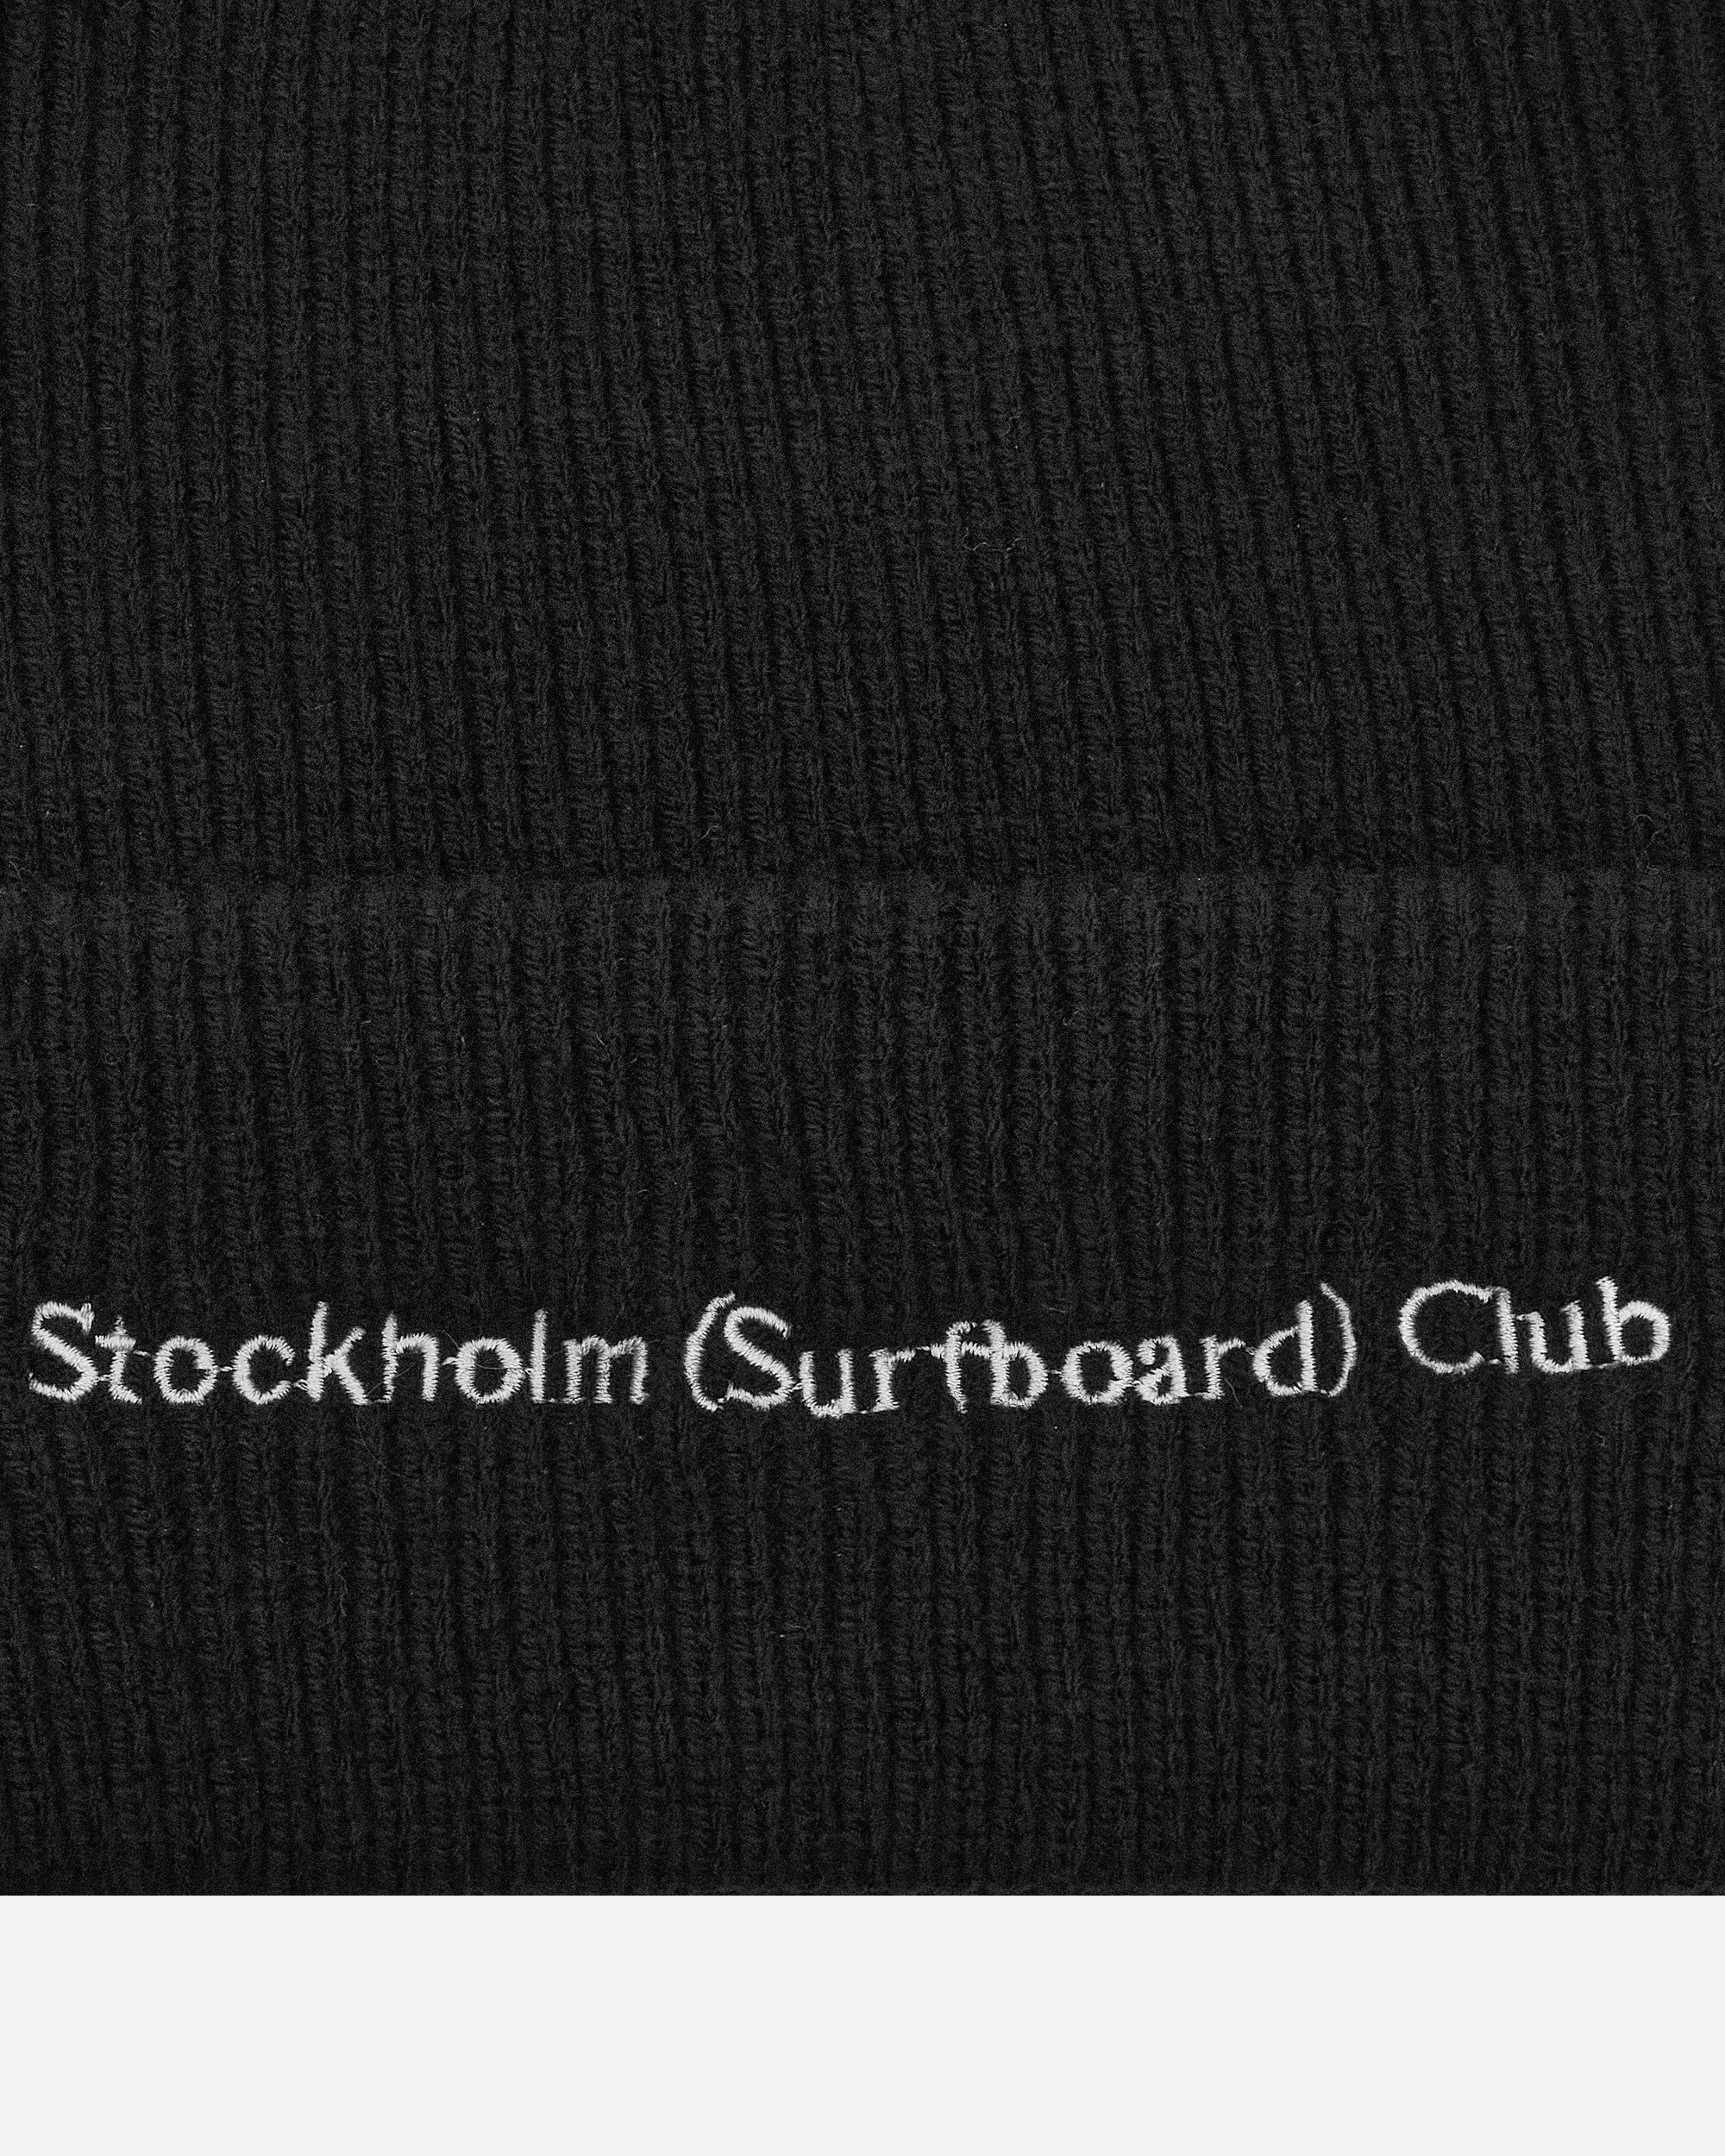 Stockholm (Surfboard) Club Mossa Black Hats Beanies MU7B90 001